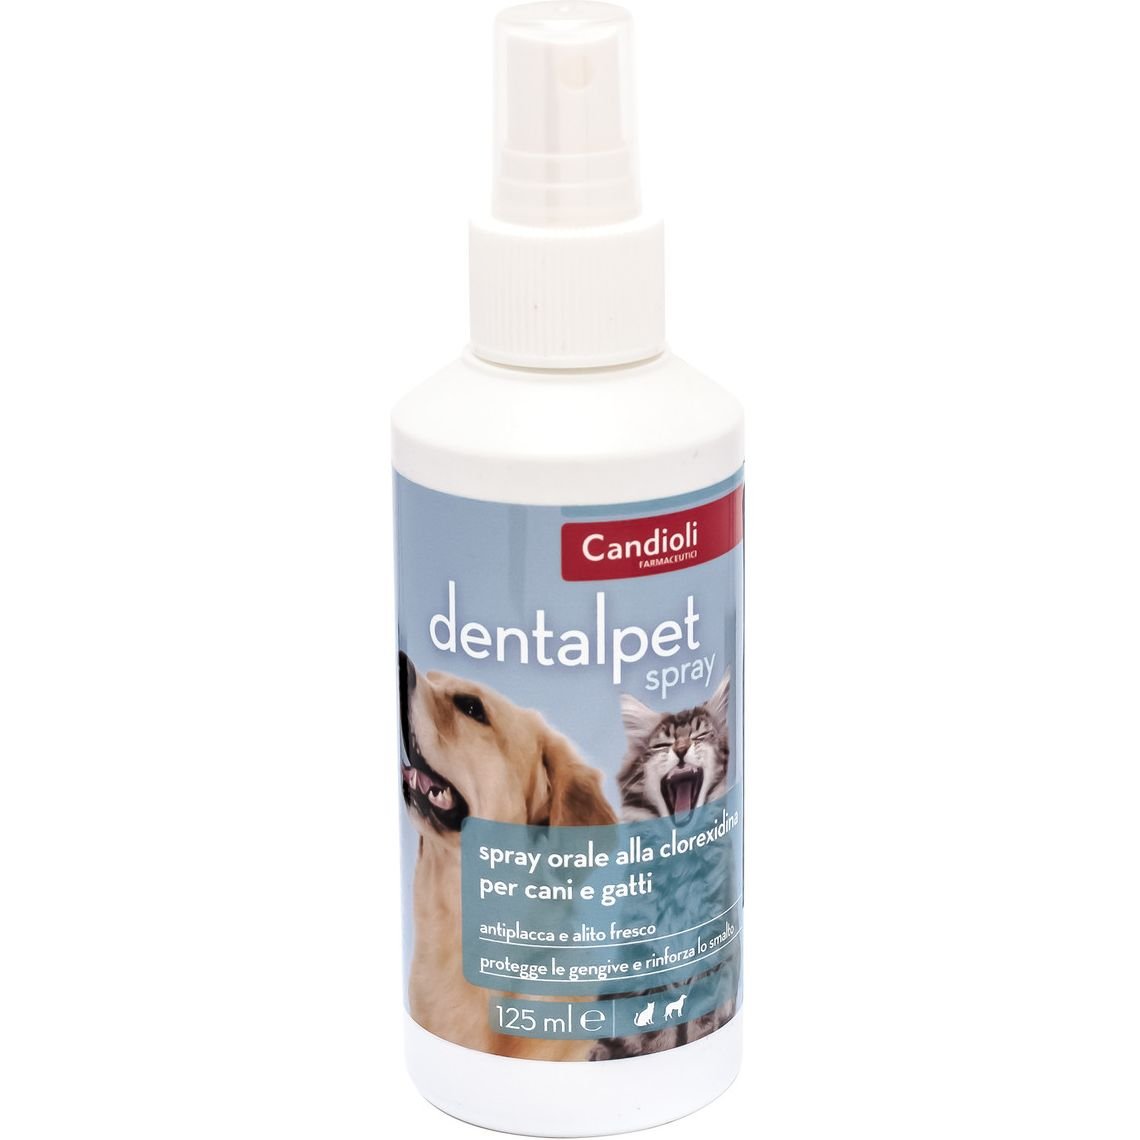 Спрей Candioli DentalPet  для зубов и десен собак, 125 мл - фото 1